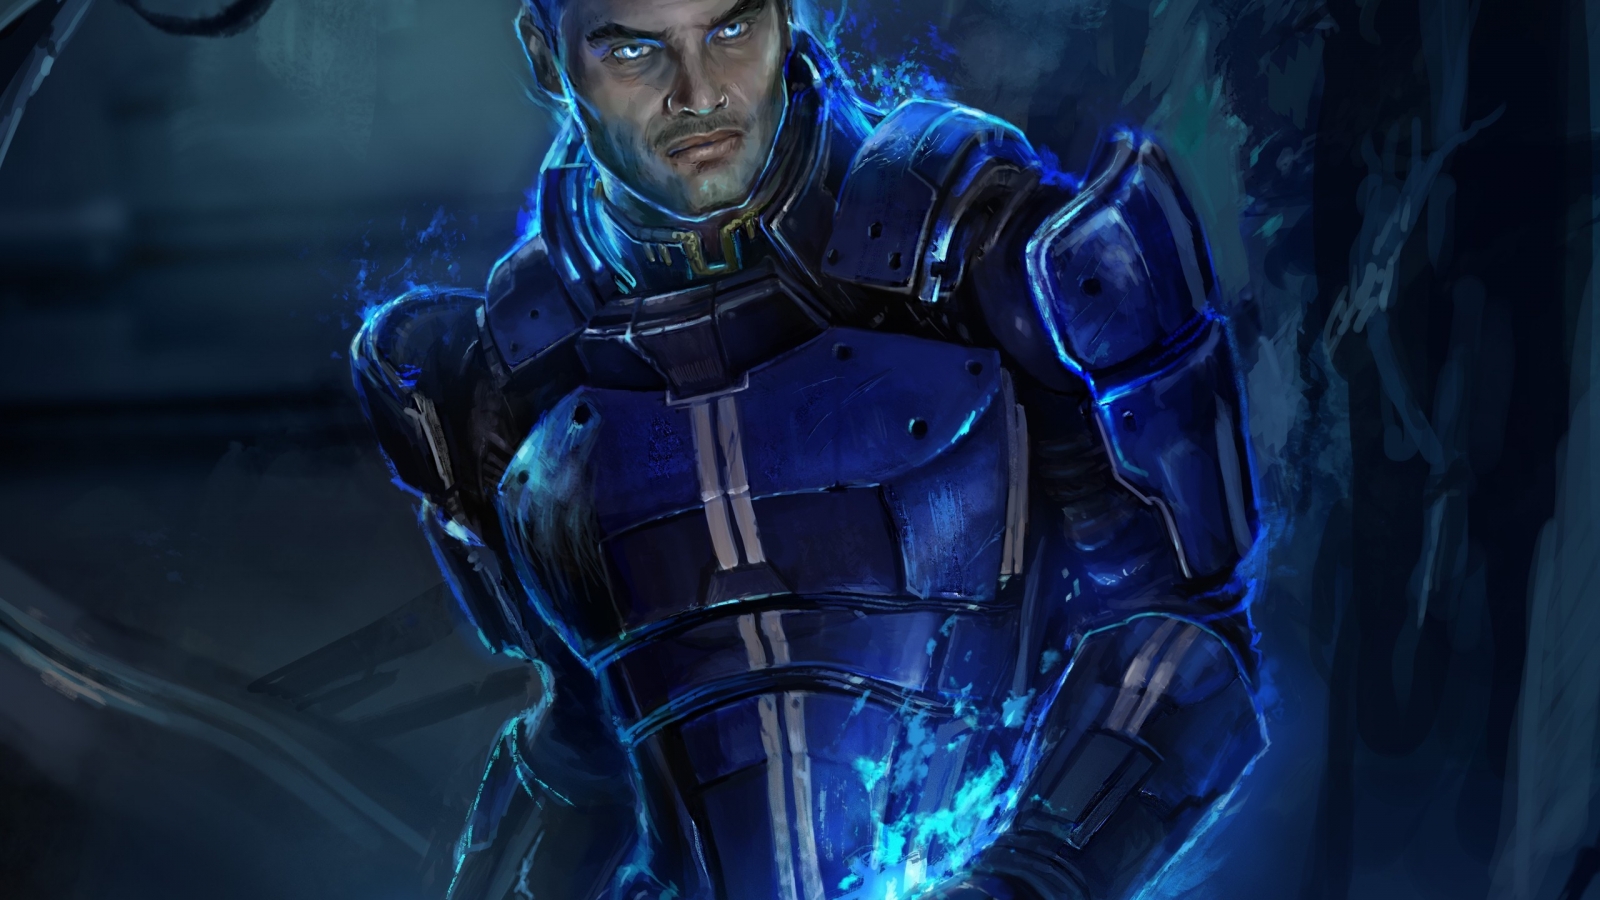 Kaidan Alenko Mass Effect 3 for 1600 x 900 HDTV resolution